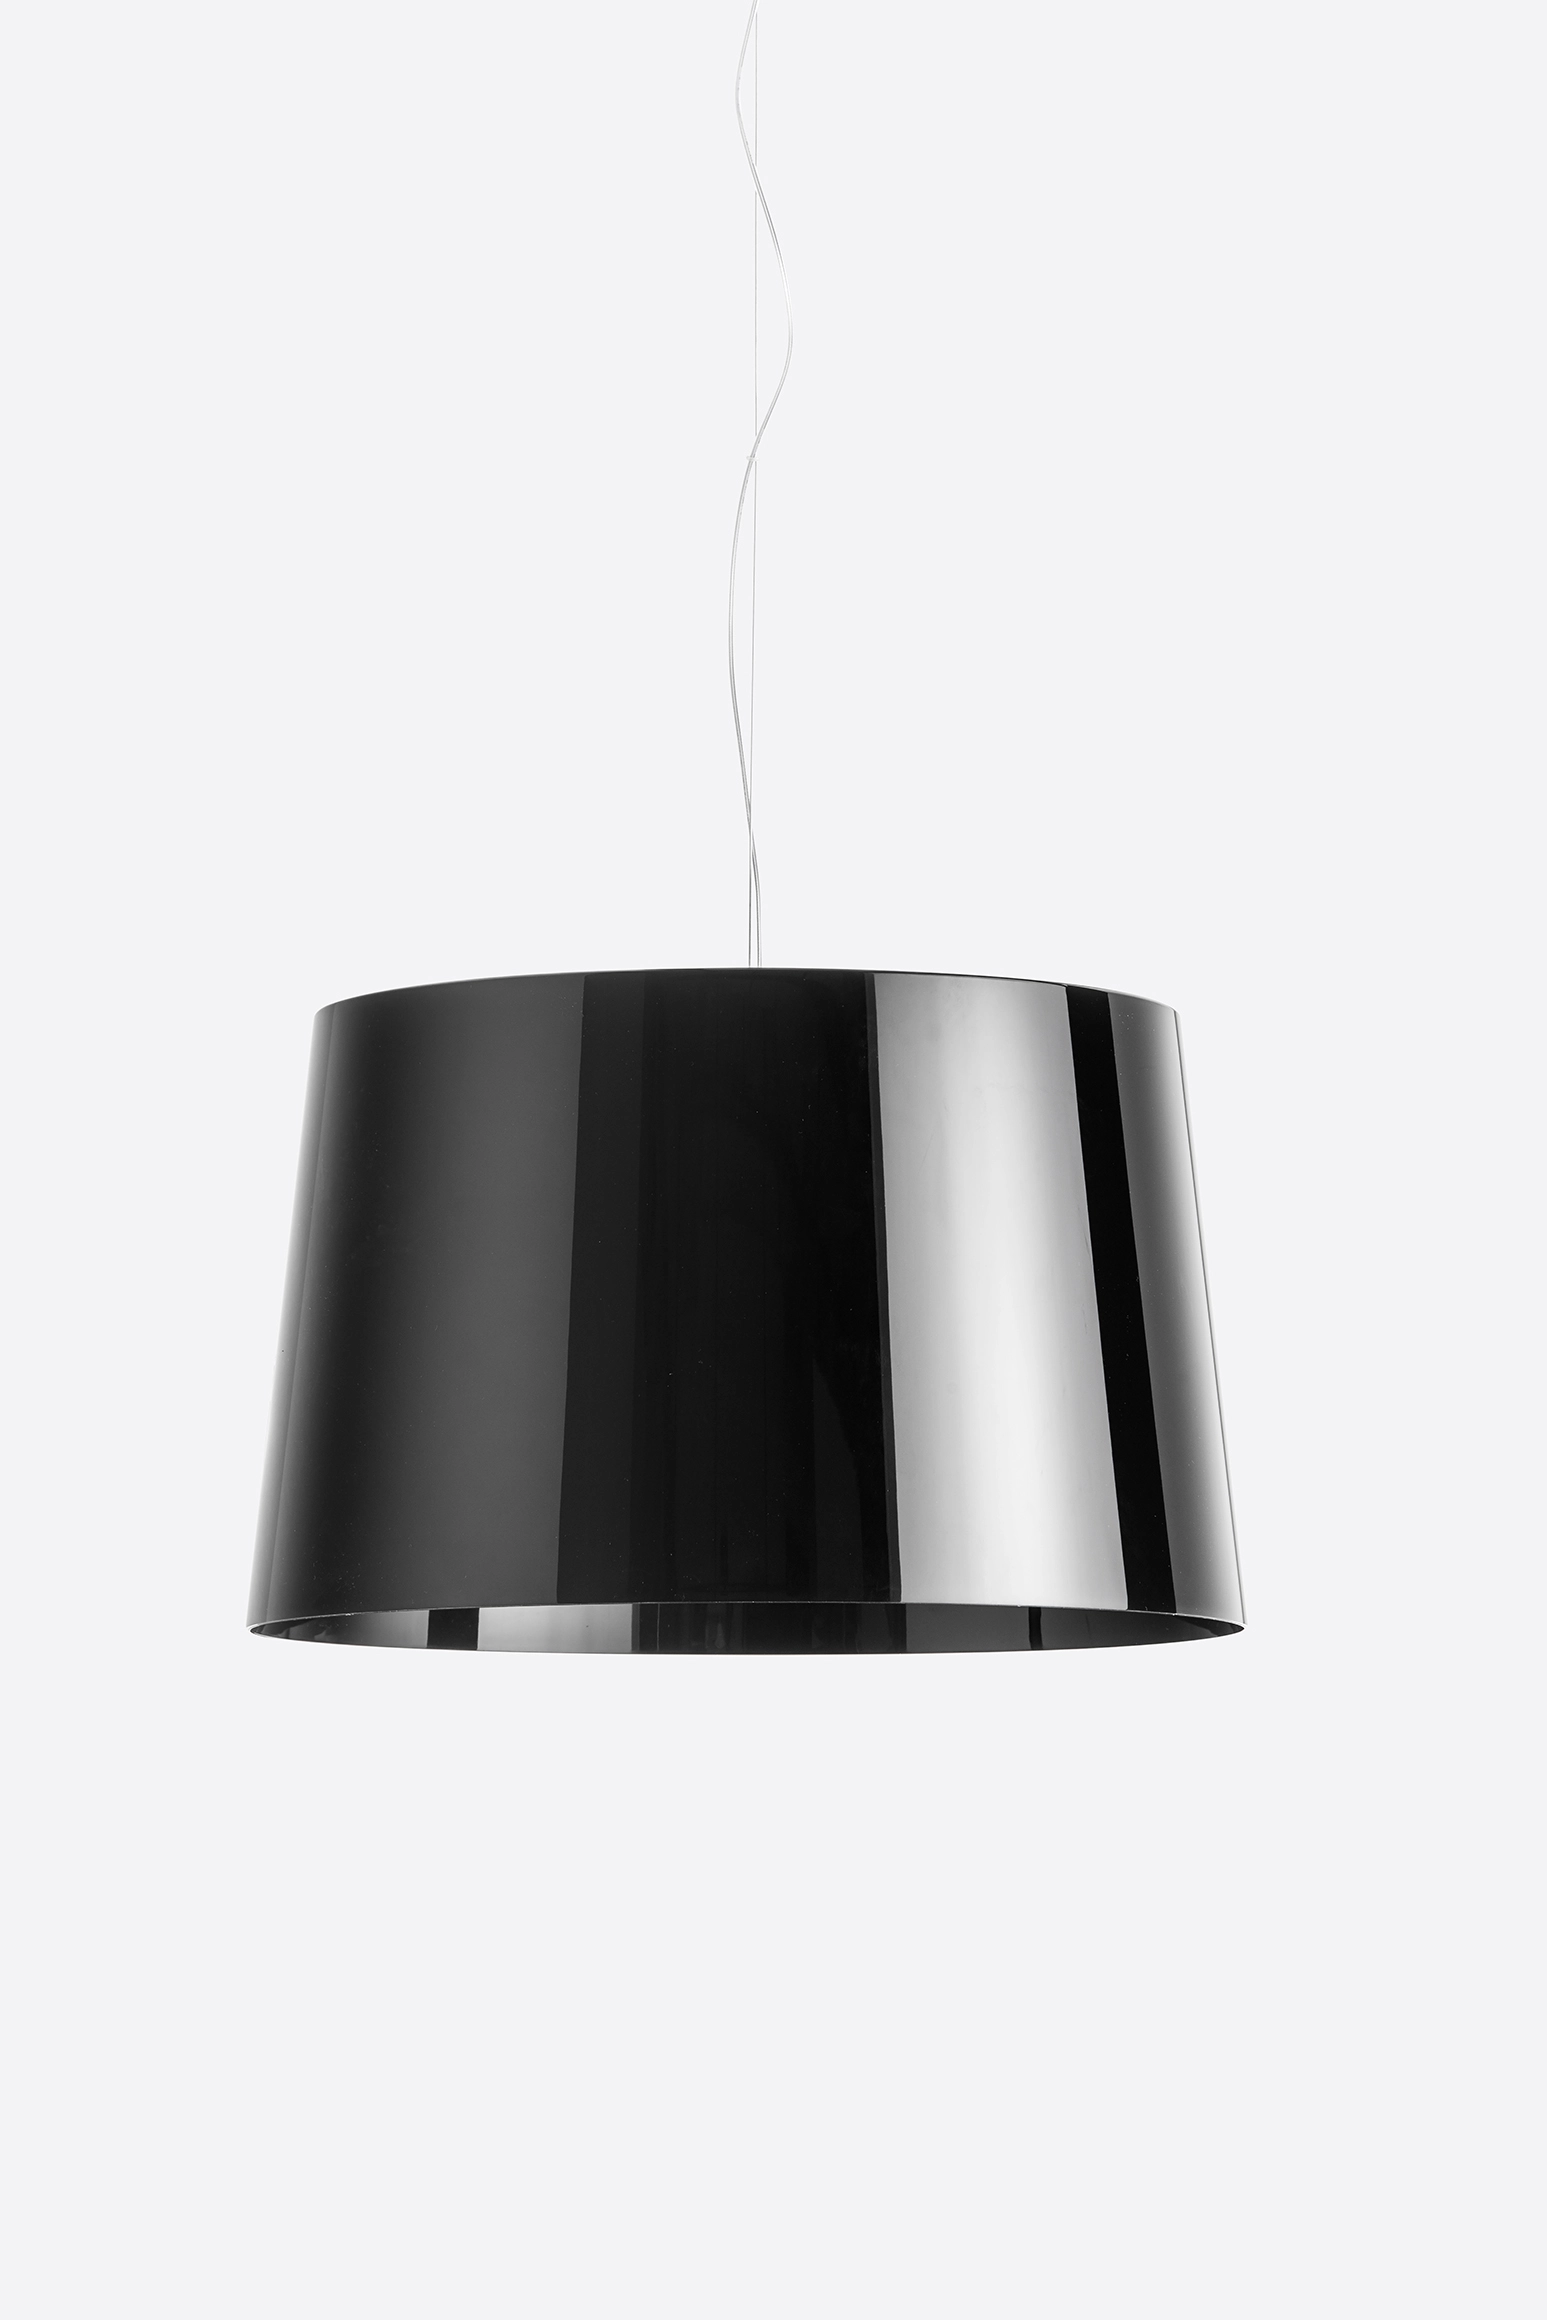 Hängelampe L001S/B - Design Lampe von Pedrali RT - rot transparent schwarz 1,8 Meter